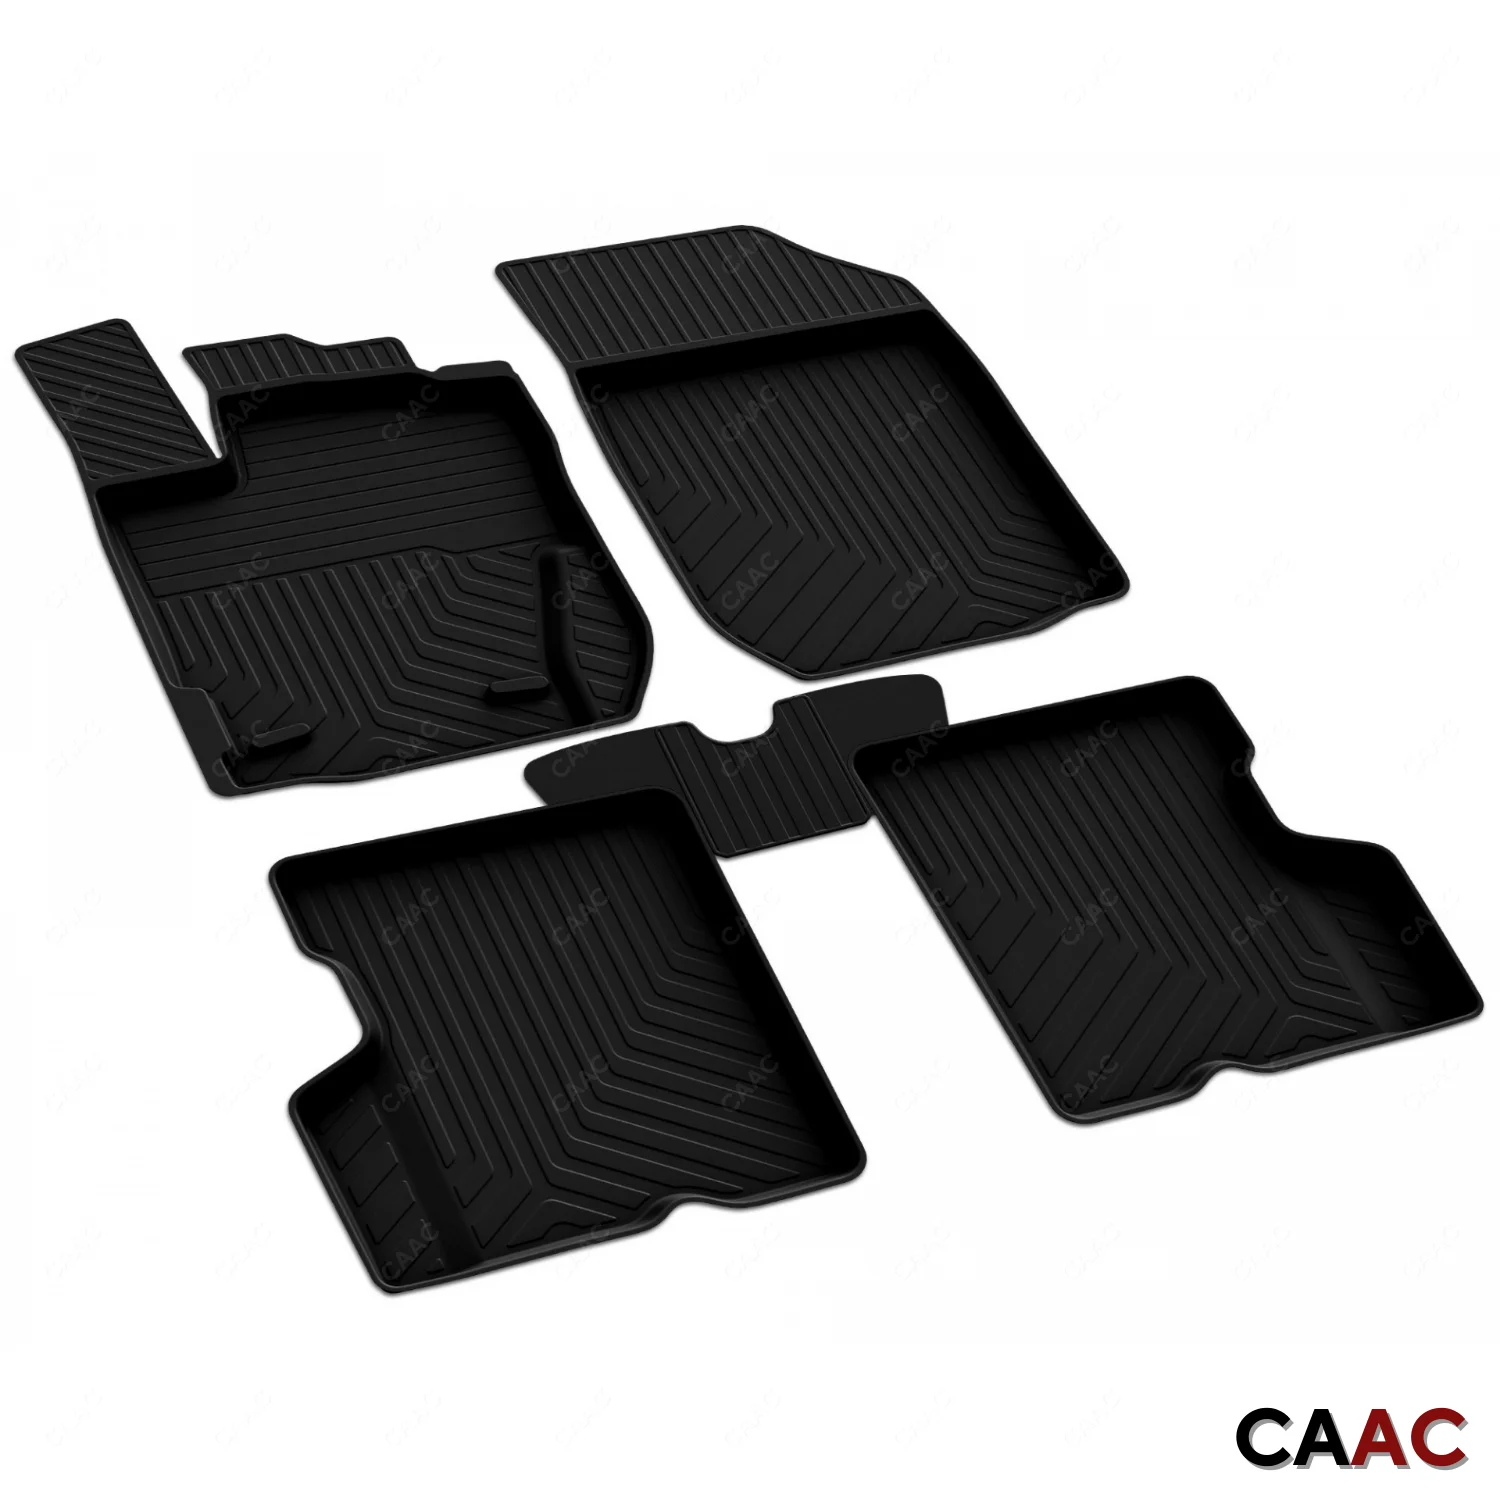 

Напольные коврики для Dacia Sandero HB 5D 2008-2012, подкладка полностью формованные черные 4D из мягкого материала, аксессуары для автомобиля, украшение